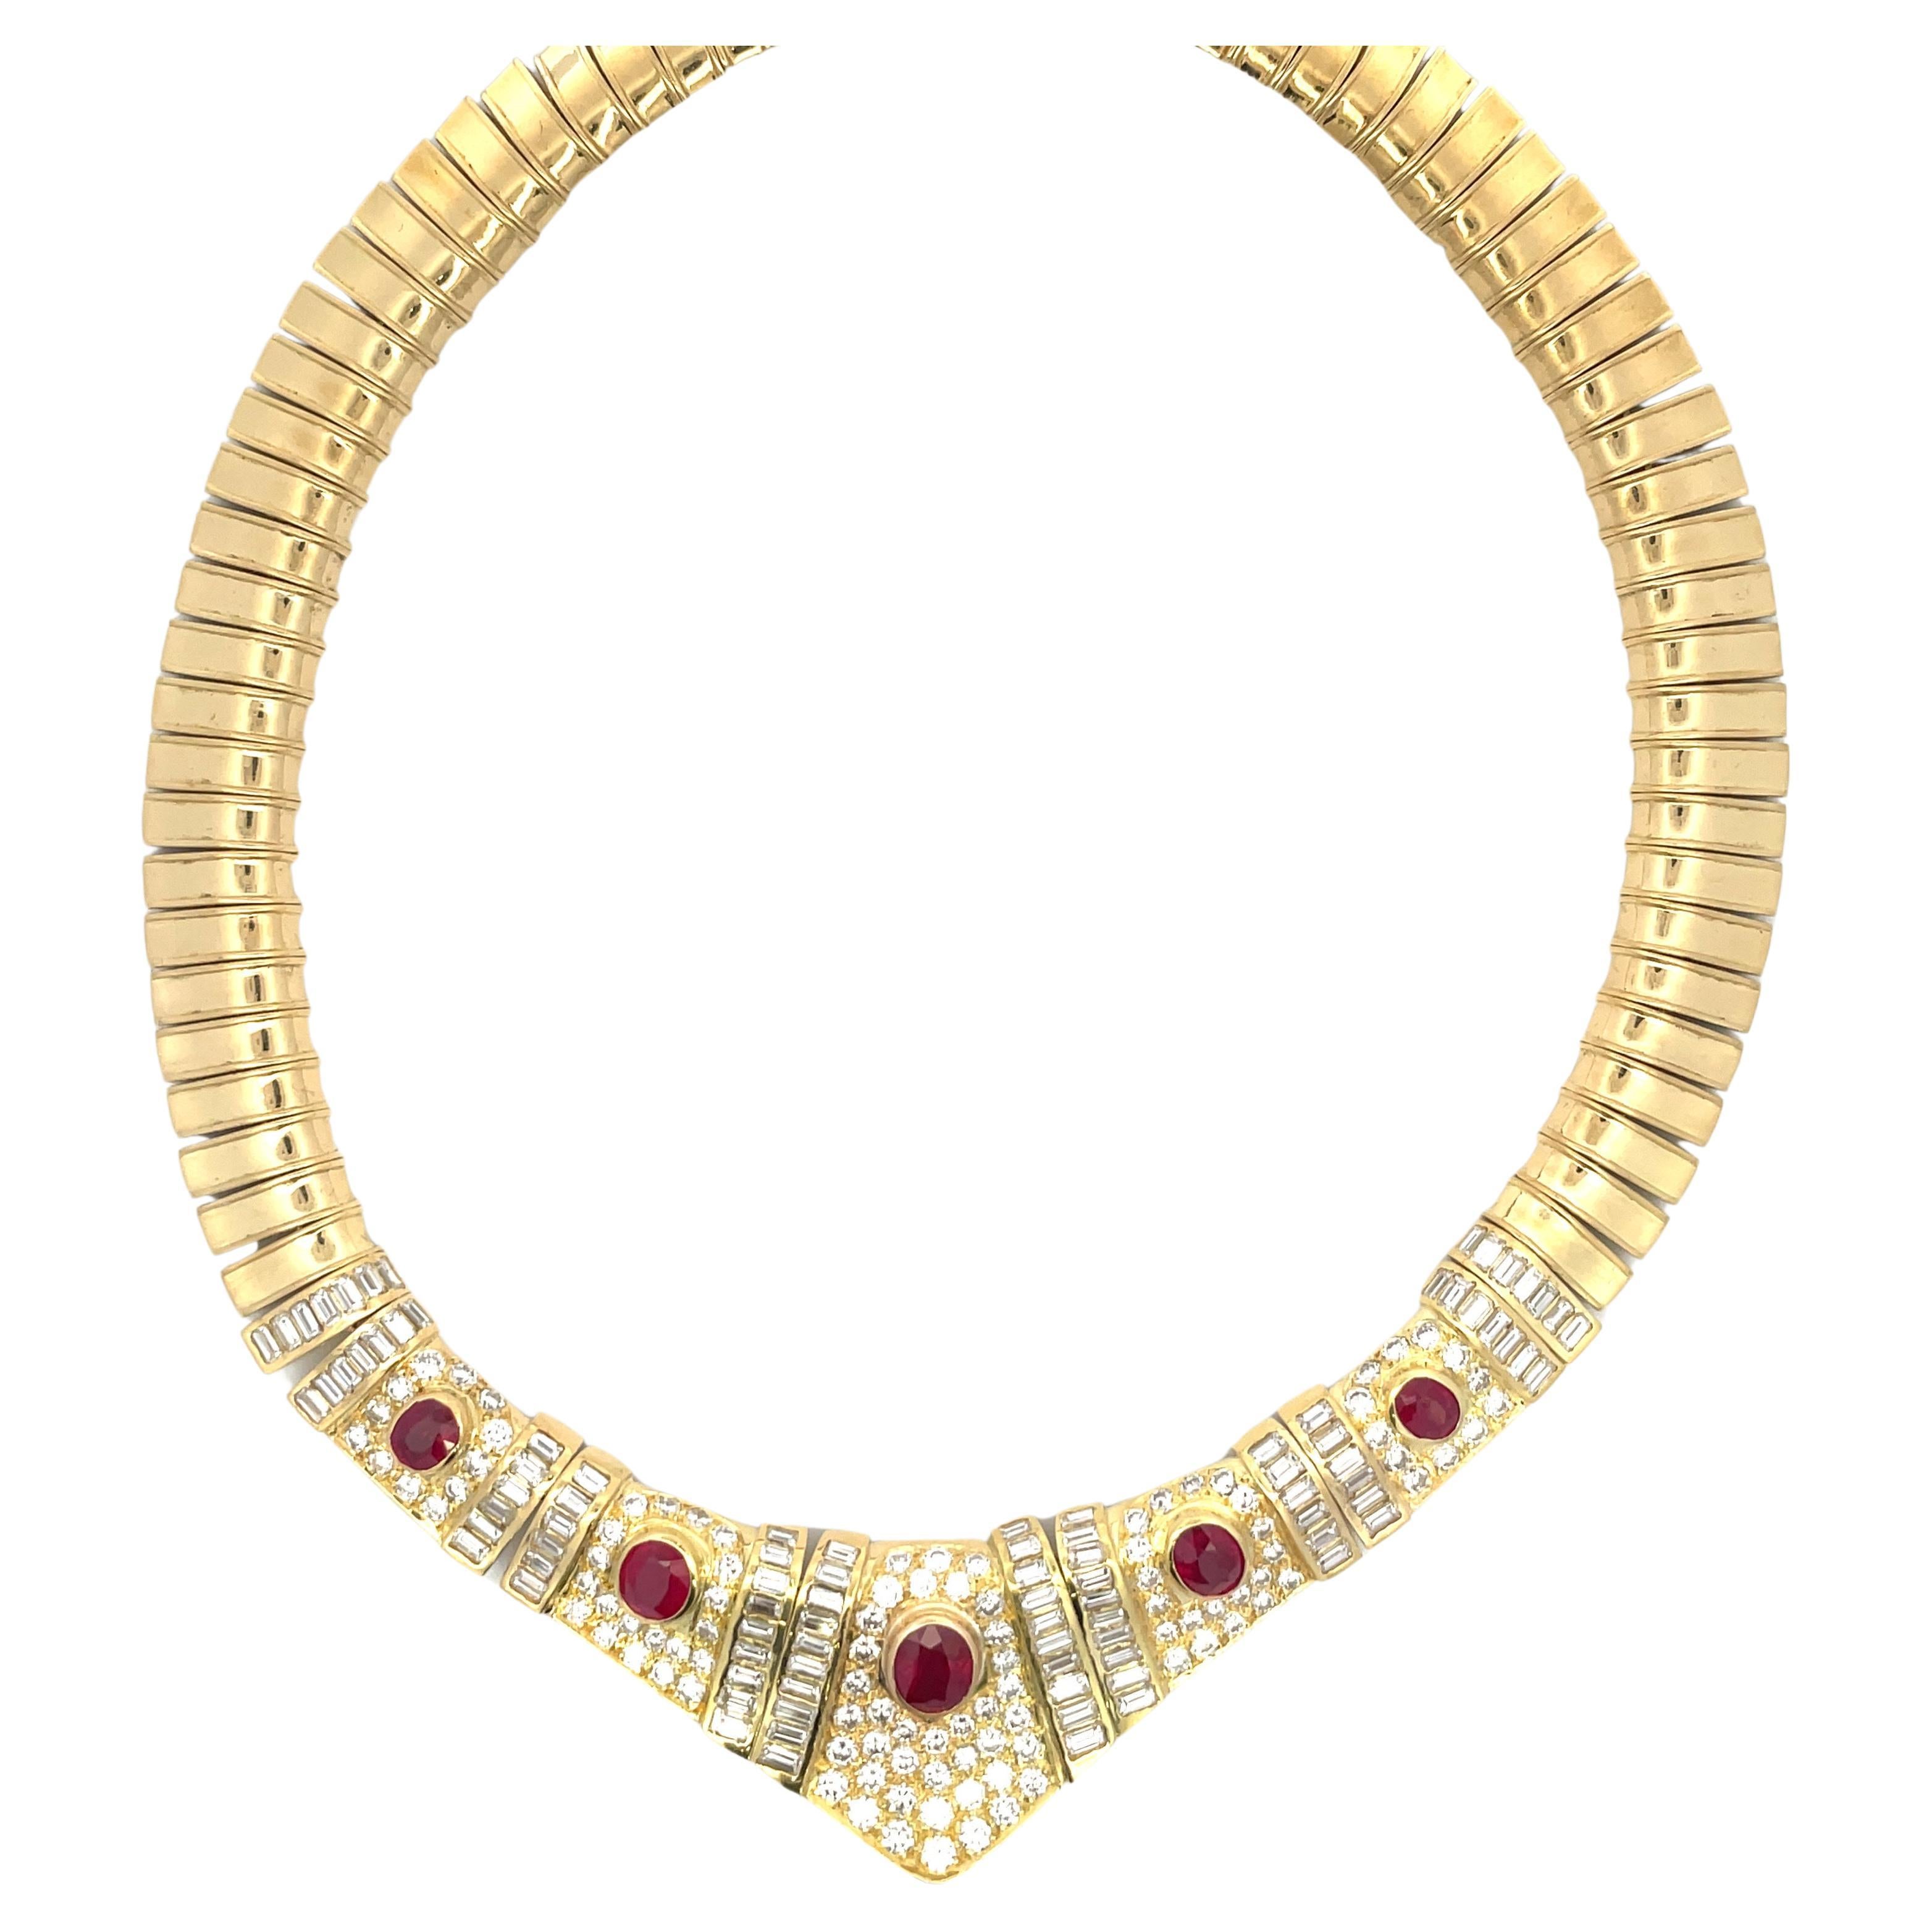 Certified Burma Ruby Diamond Collar Necklace 24.50 Carats 18 Karat Yellow Gold